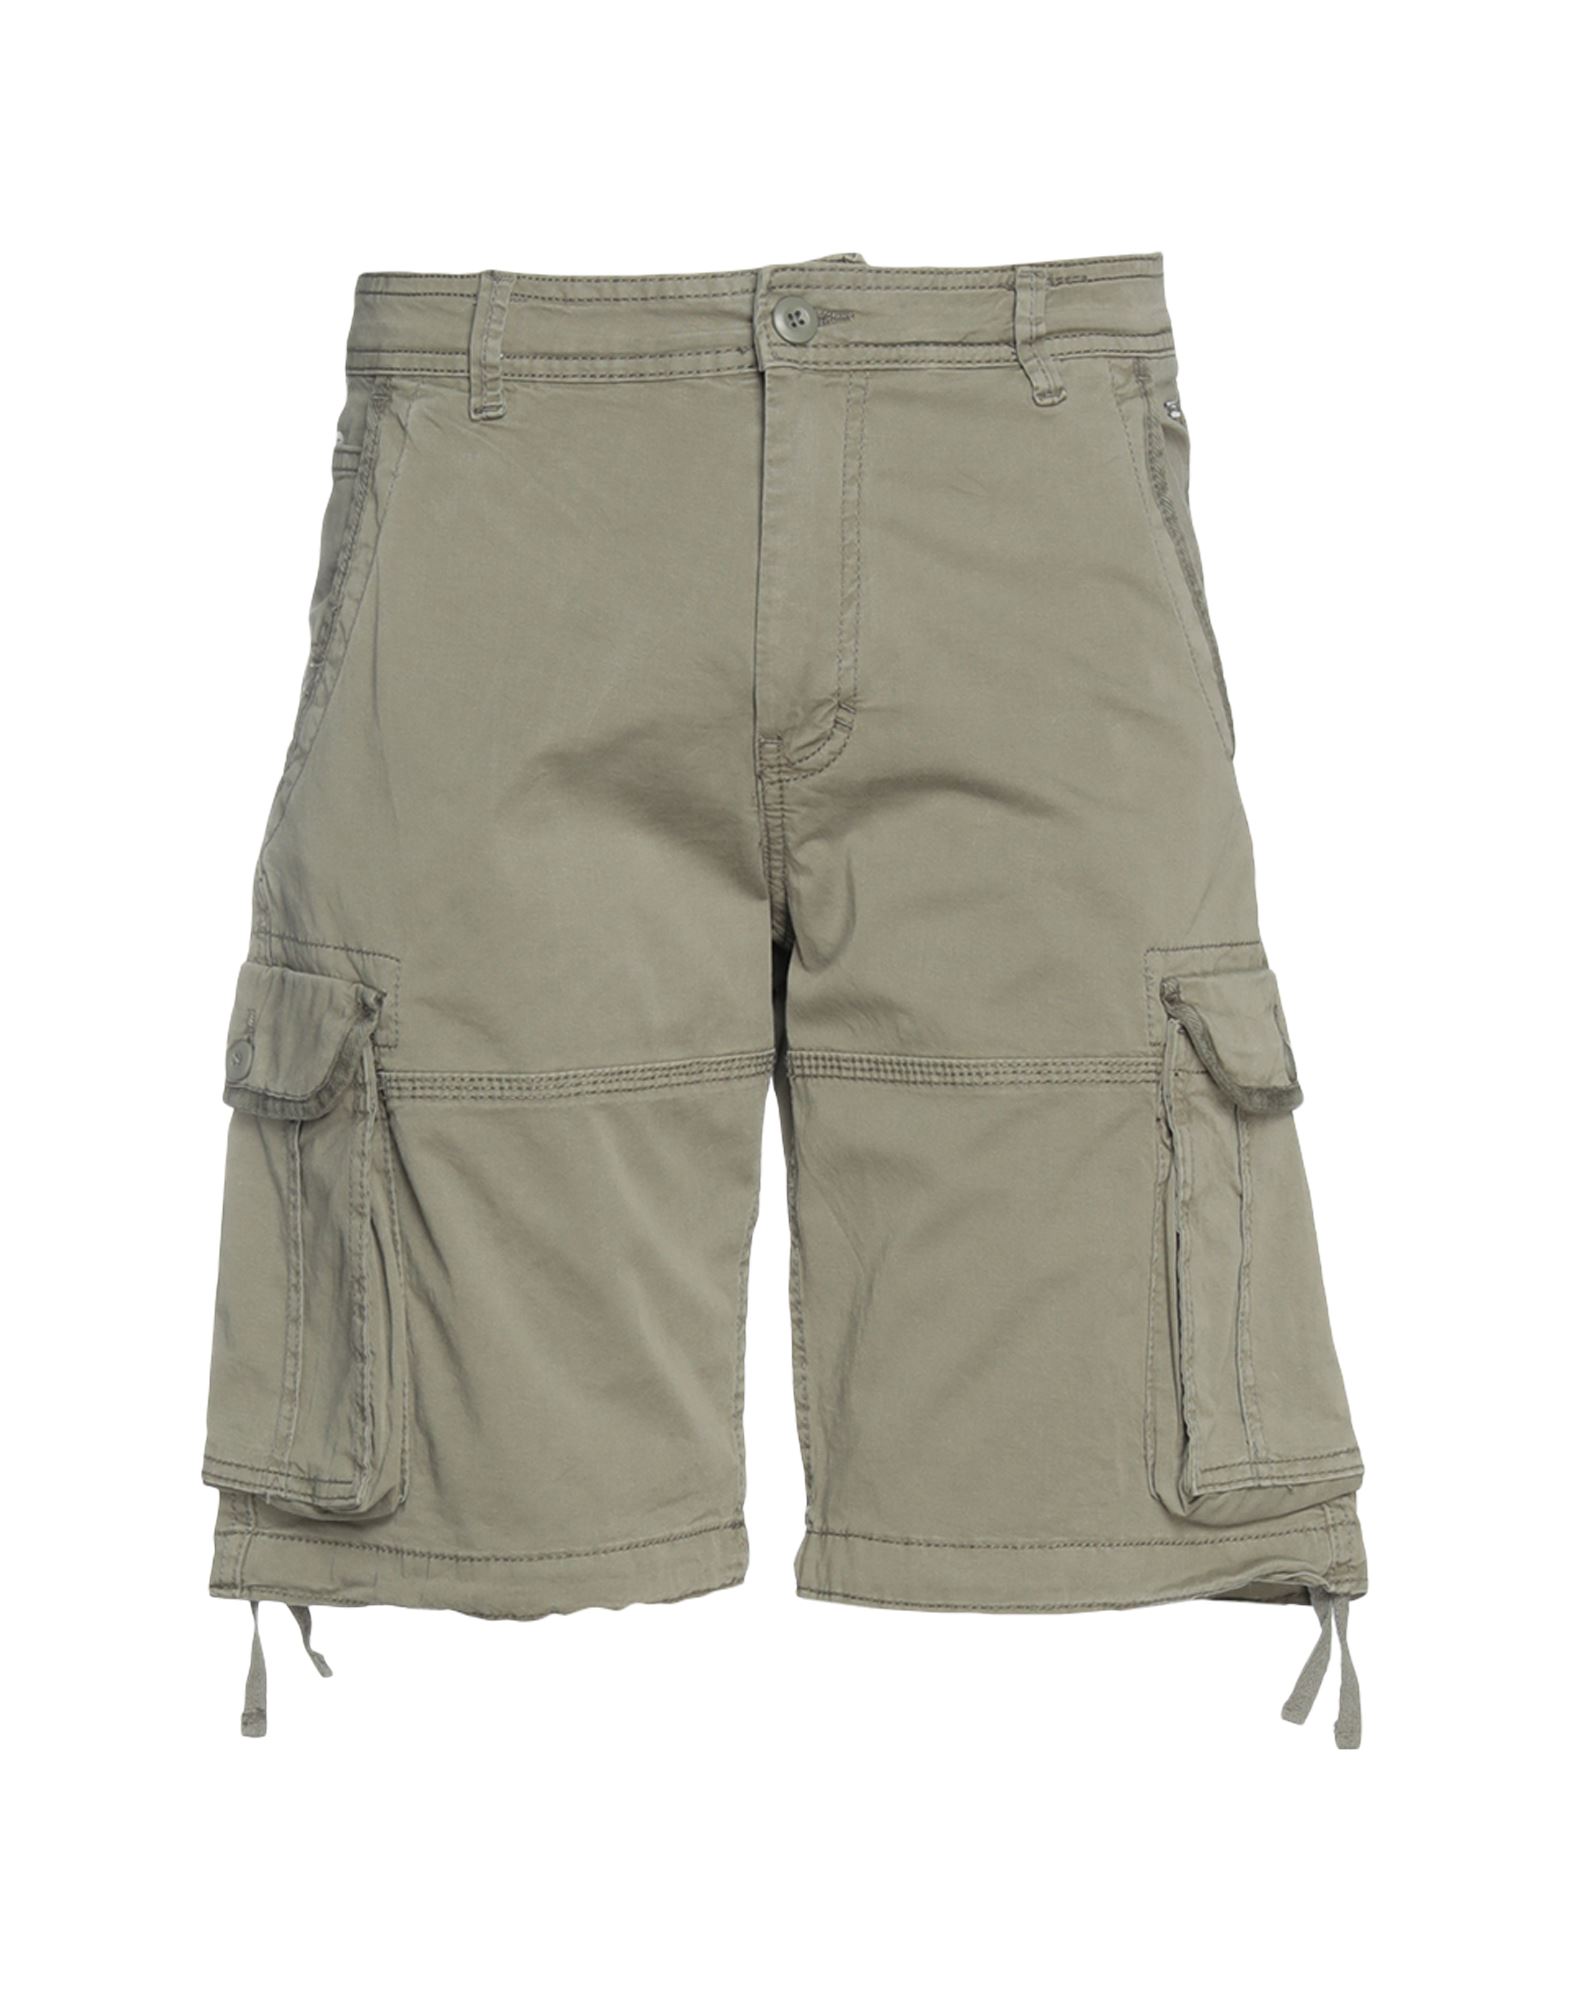 Jack & Jones Man Shorts & Bermuda Shorts Sage Green Size M Cotton, Elastane